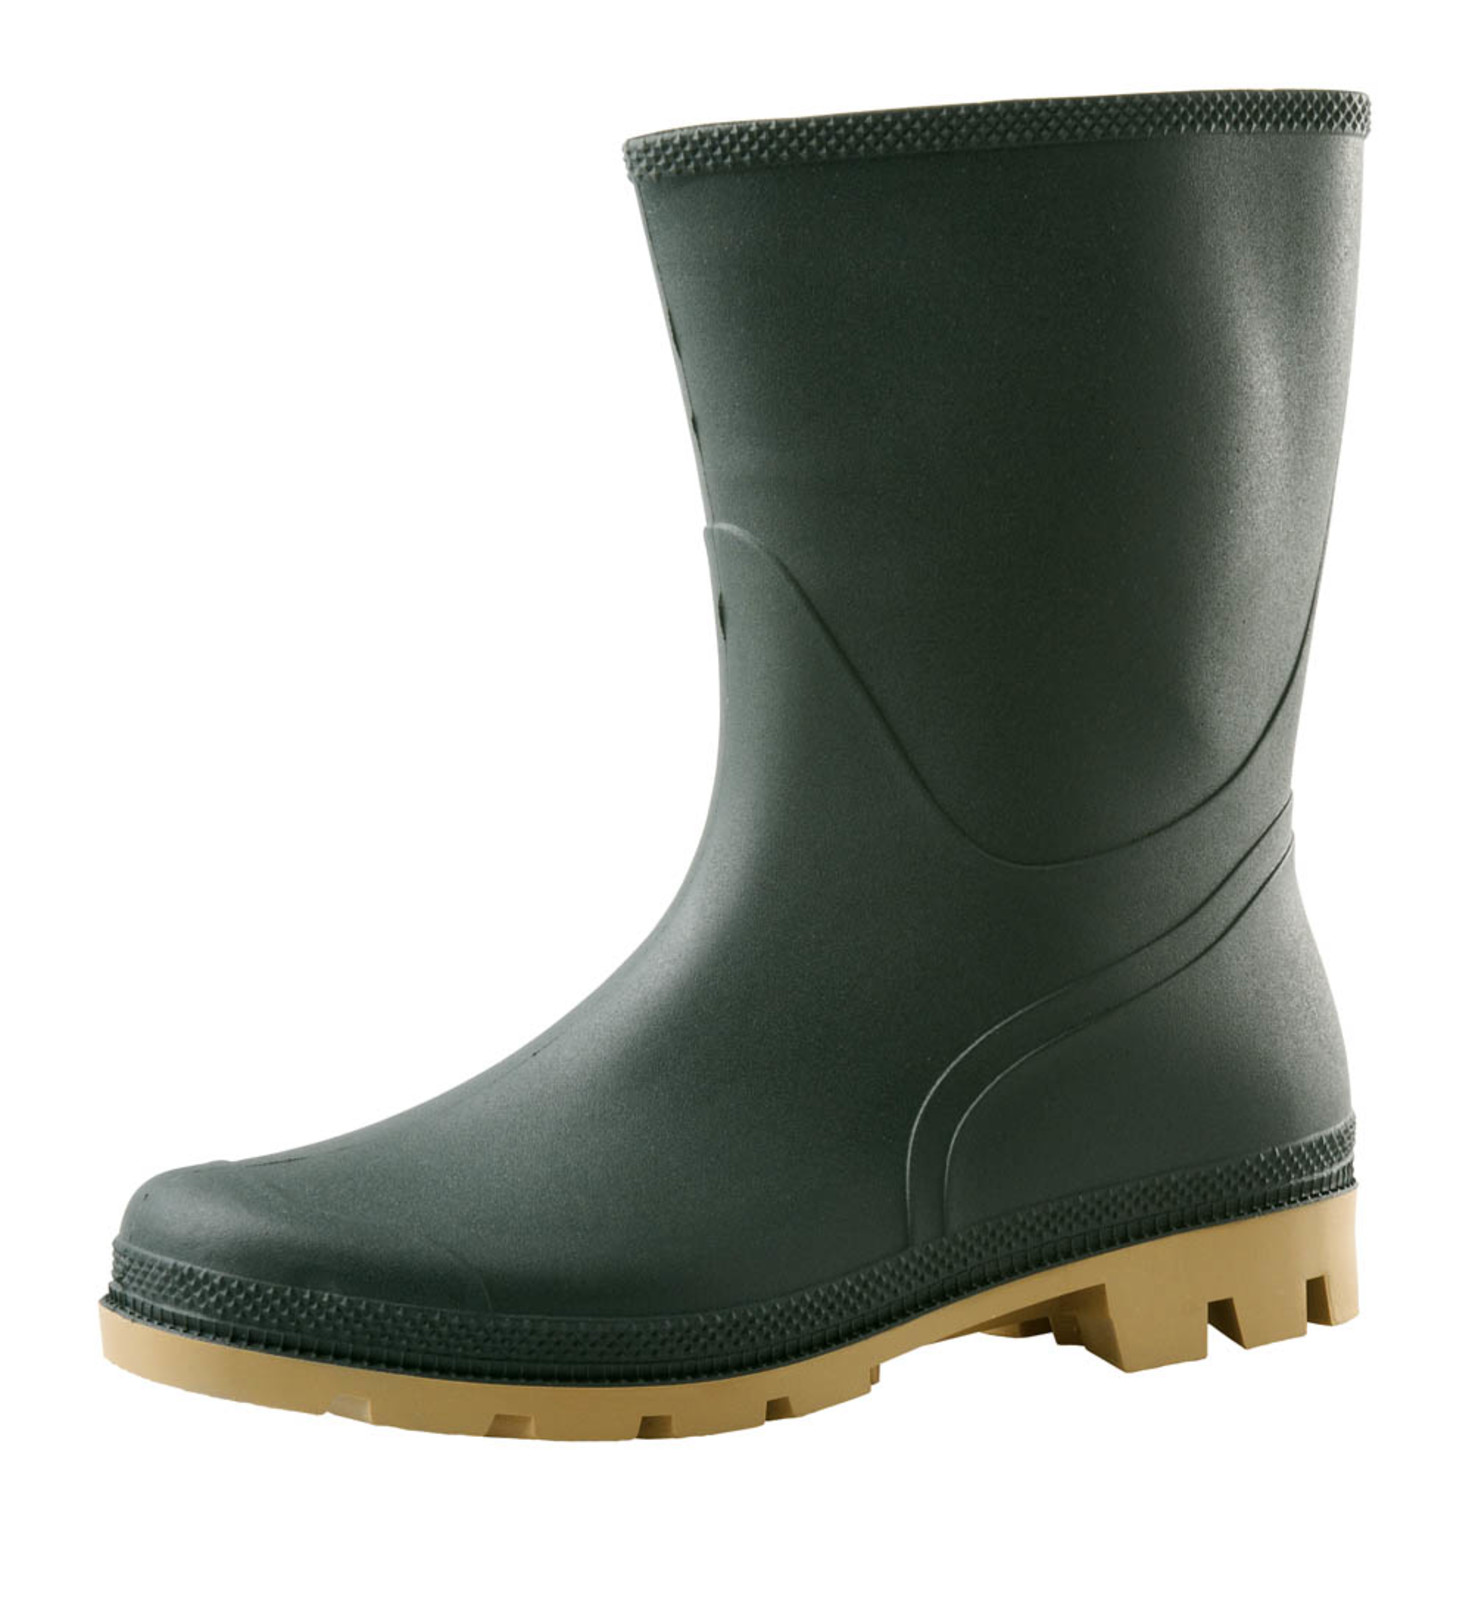 Gumáky Boots Troncheto PVC nízke - veľkosť: 38, farba: zelená